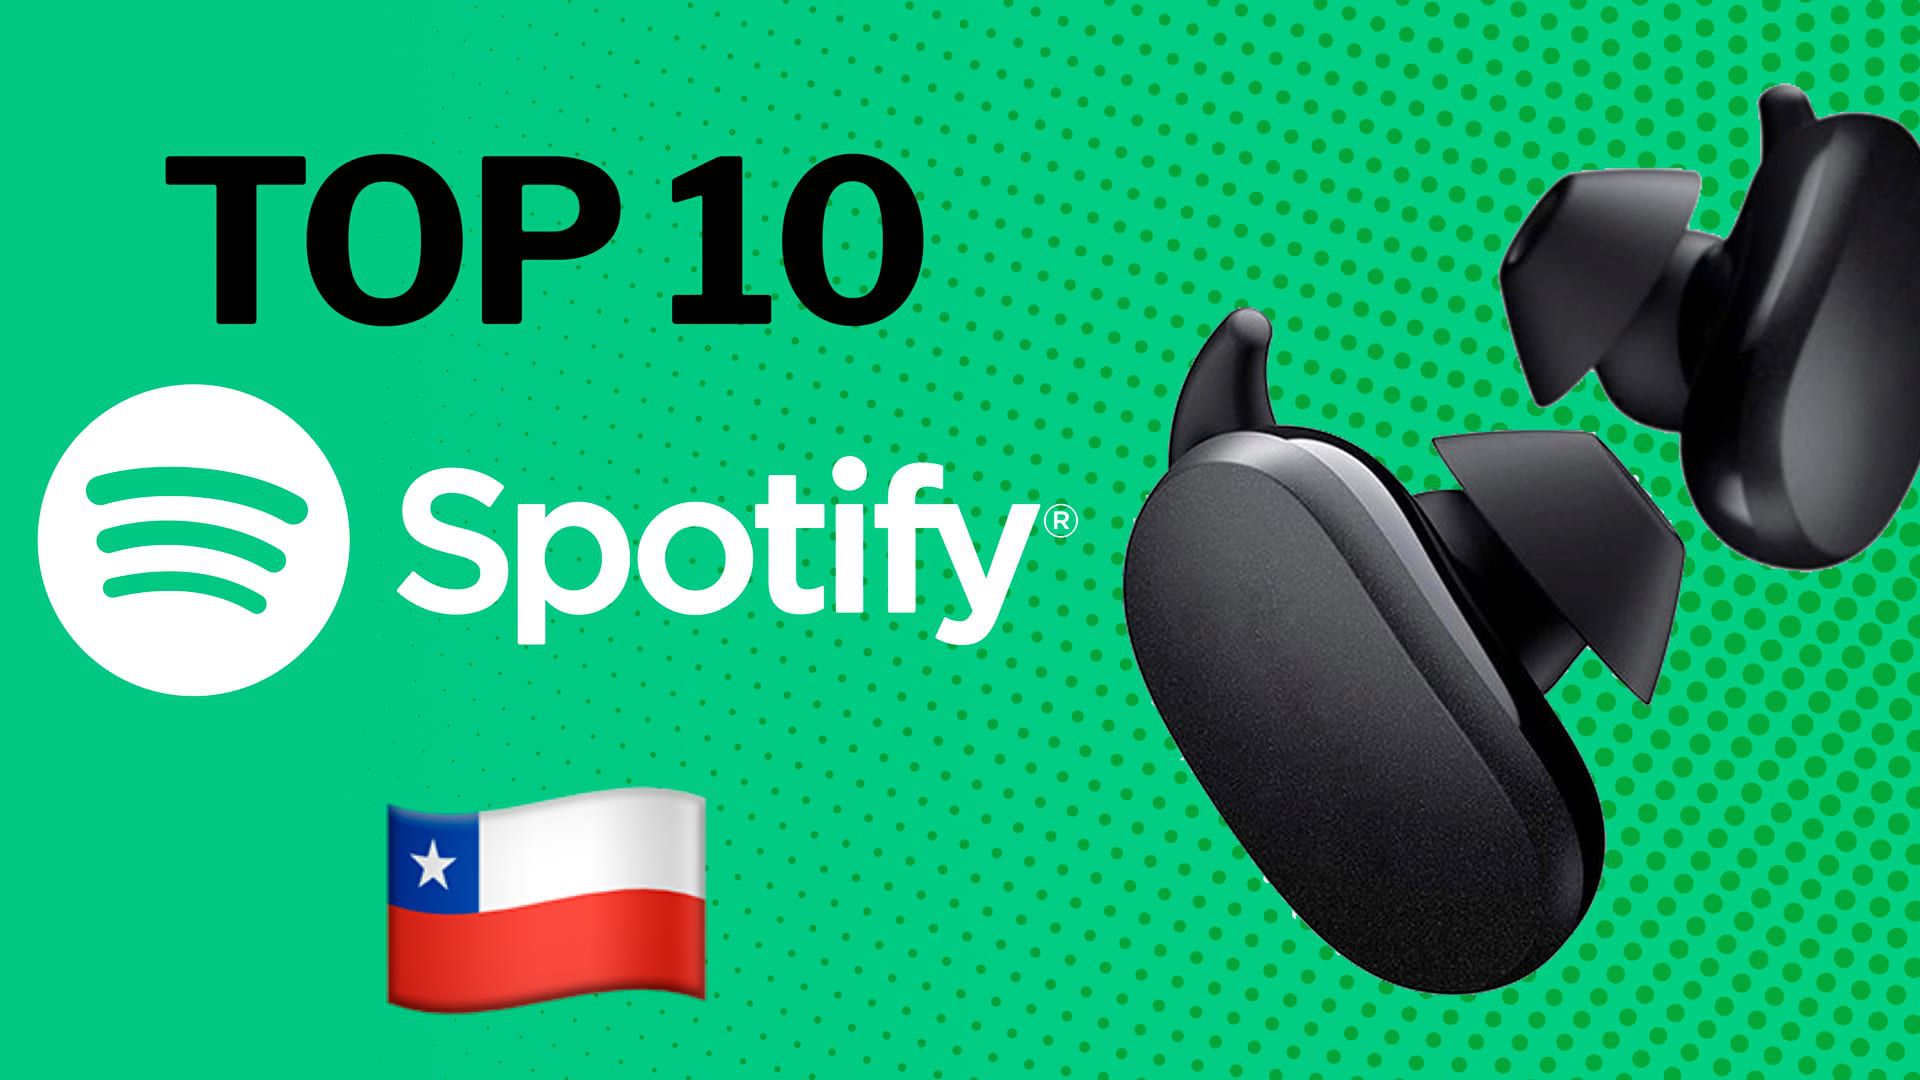 Ranking Spotify: las 10 canciones más escuchadas en Chile